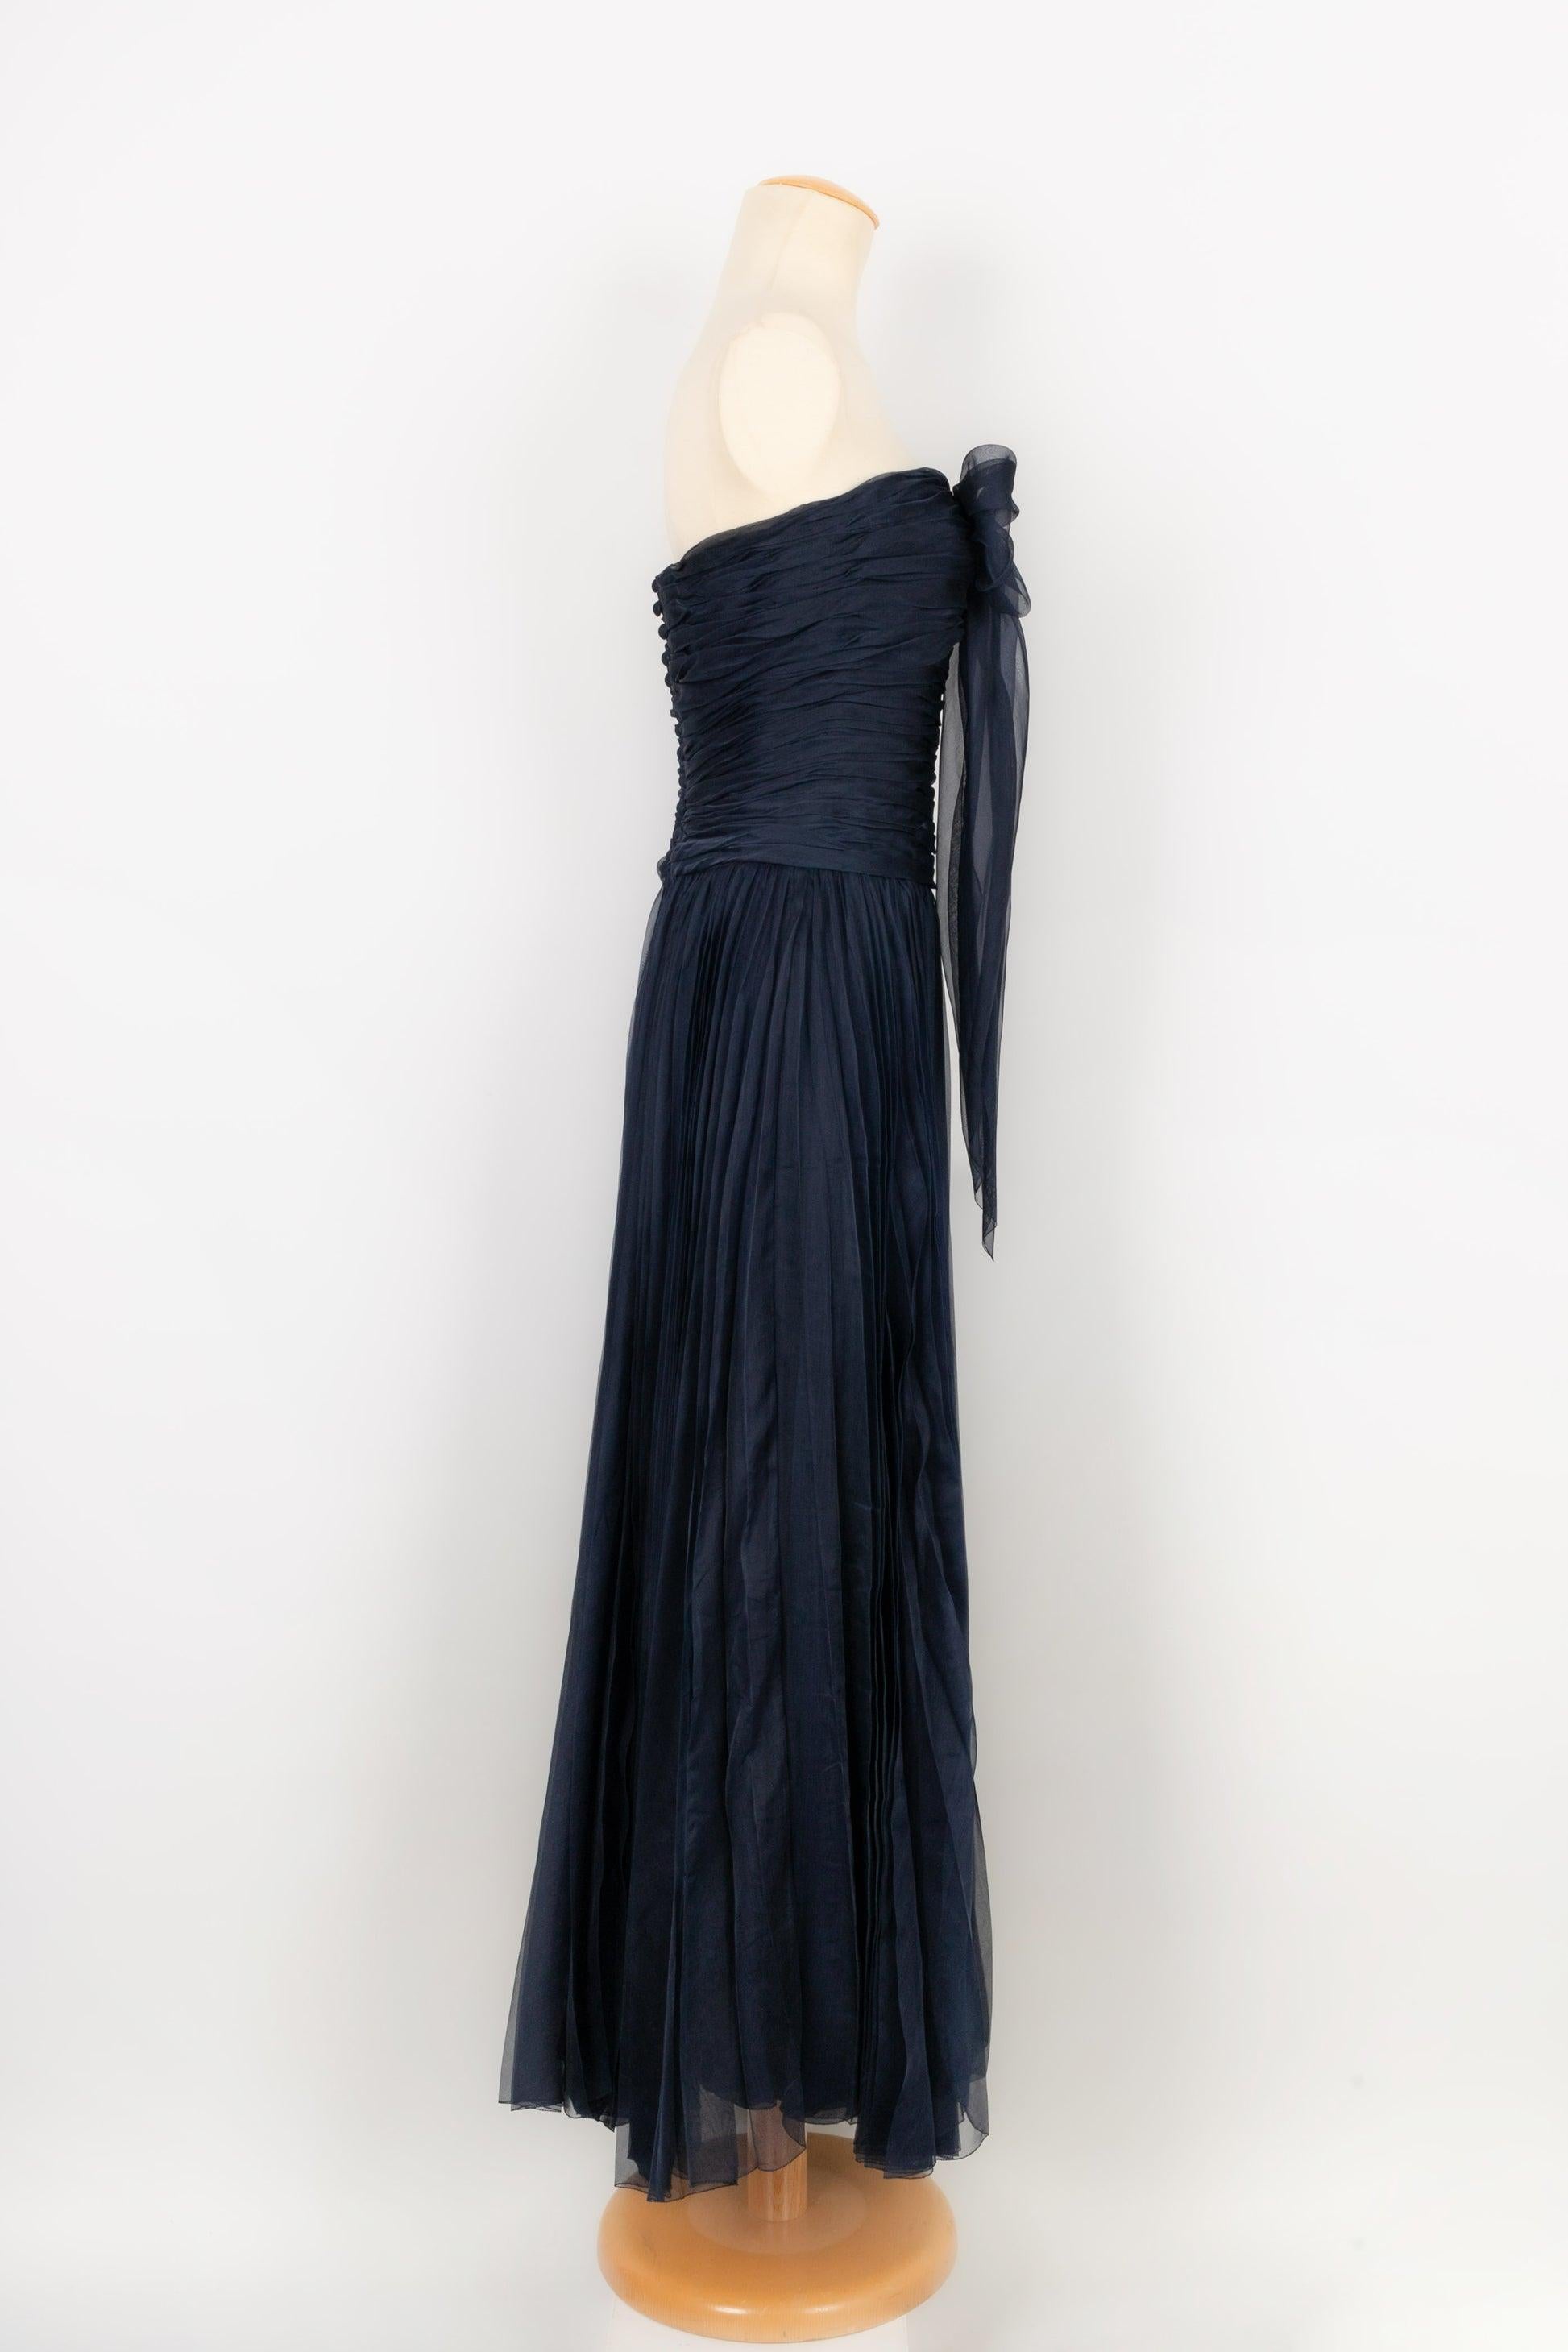 Chanel - Longue robe bustier en taffetas de soie plissé bleu marine. Pas de Label de taille ni de composition, il convient à un 38FR.

Informations complémentaires :
Condit : Très bon état.
Dimensions : Poitrine : 35 cm - Taille : 34 cm - Longueur :